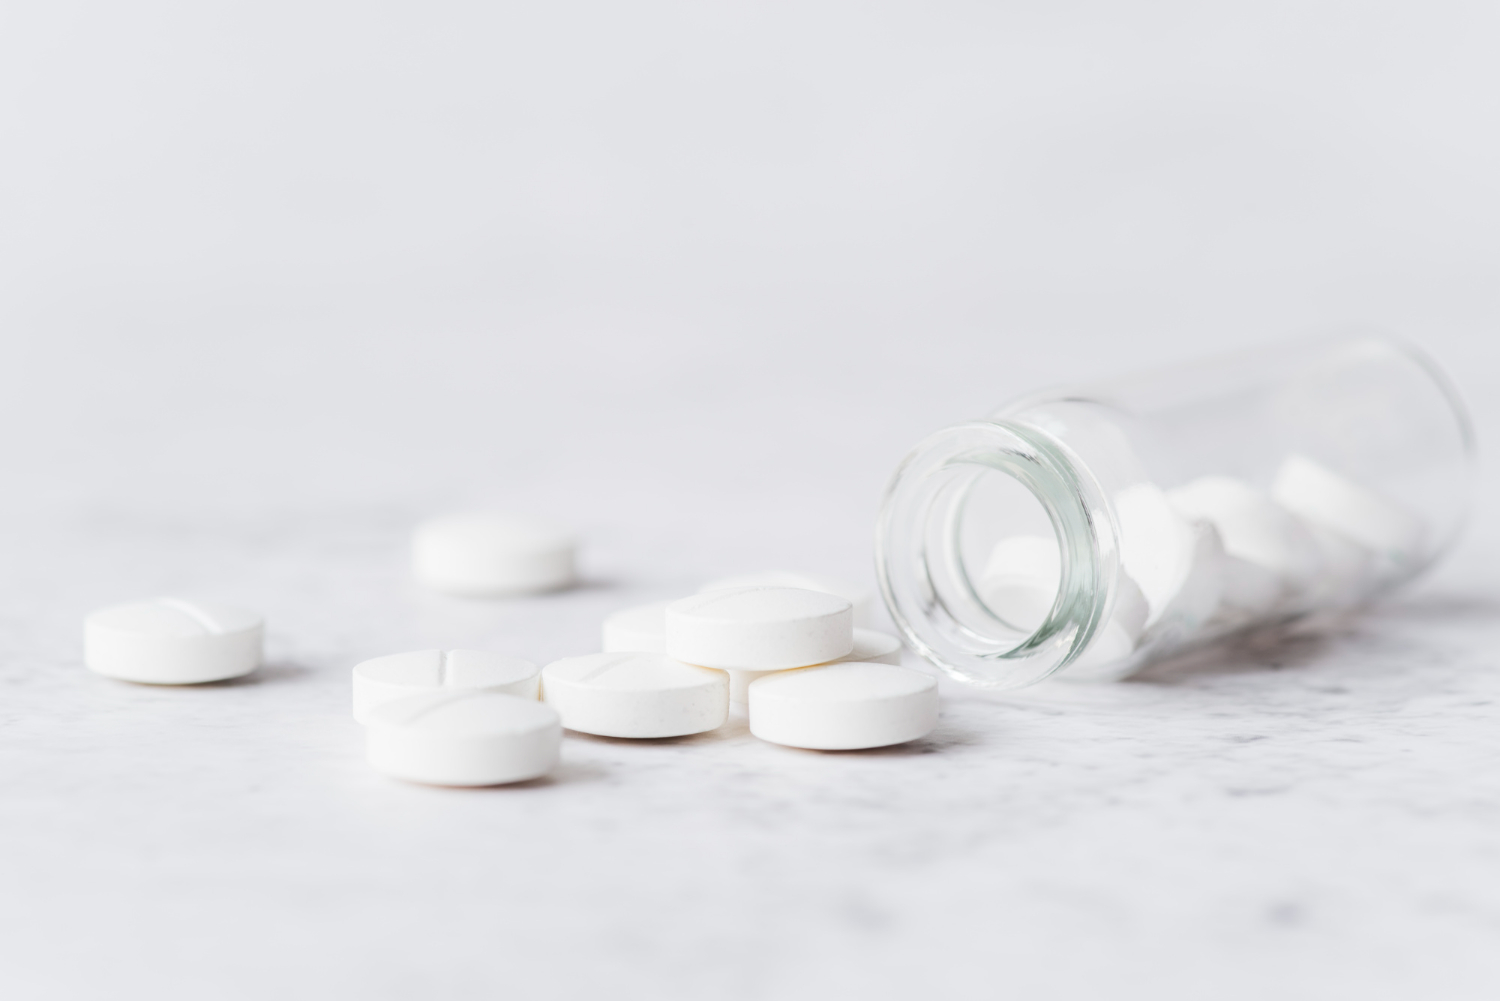 Tomar aspirina diariamente aumenta risco de hemorragia estomacal em idosos